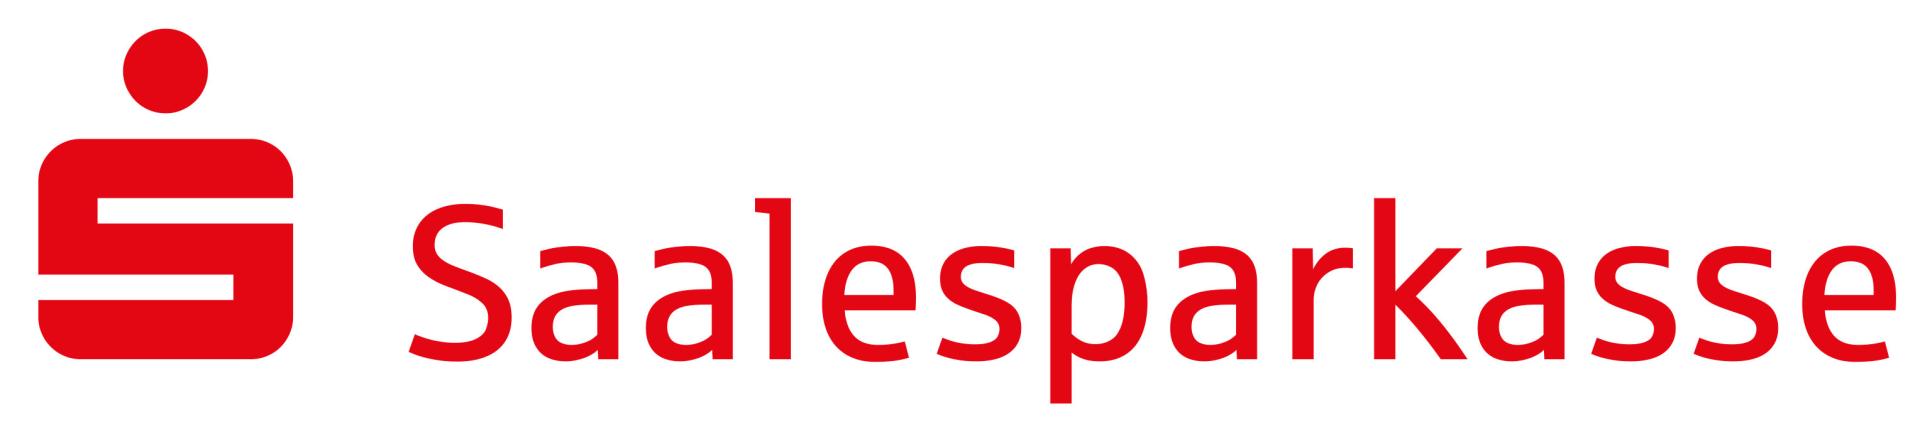 Saalesparkasse Logo